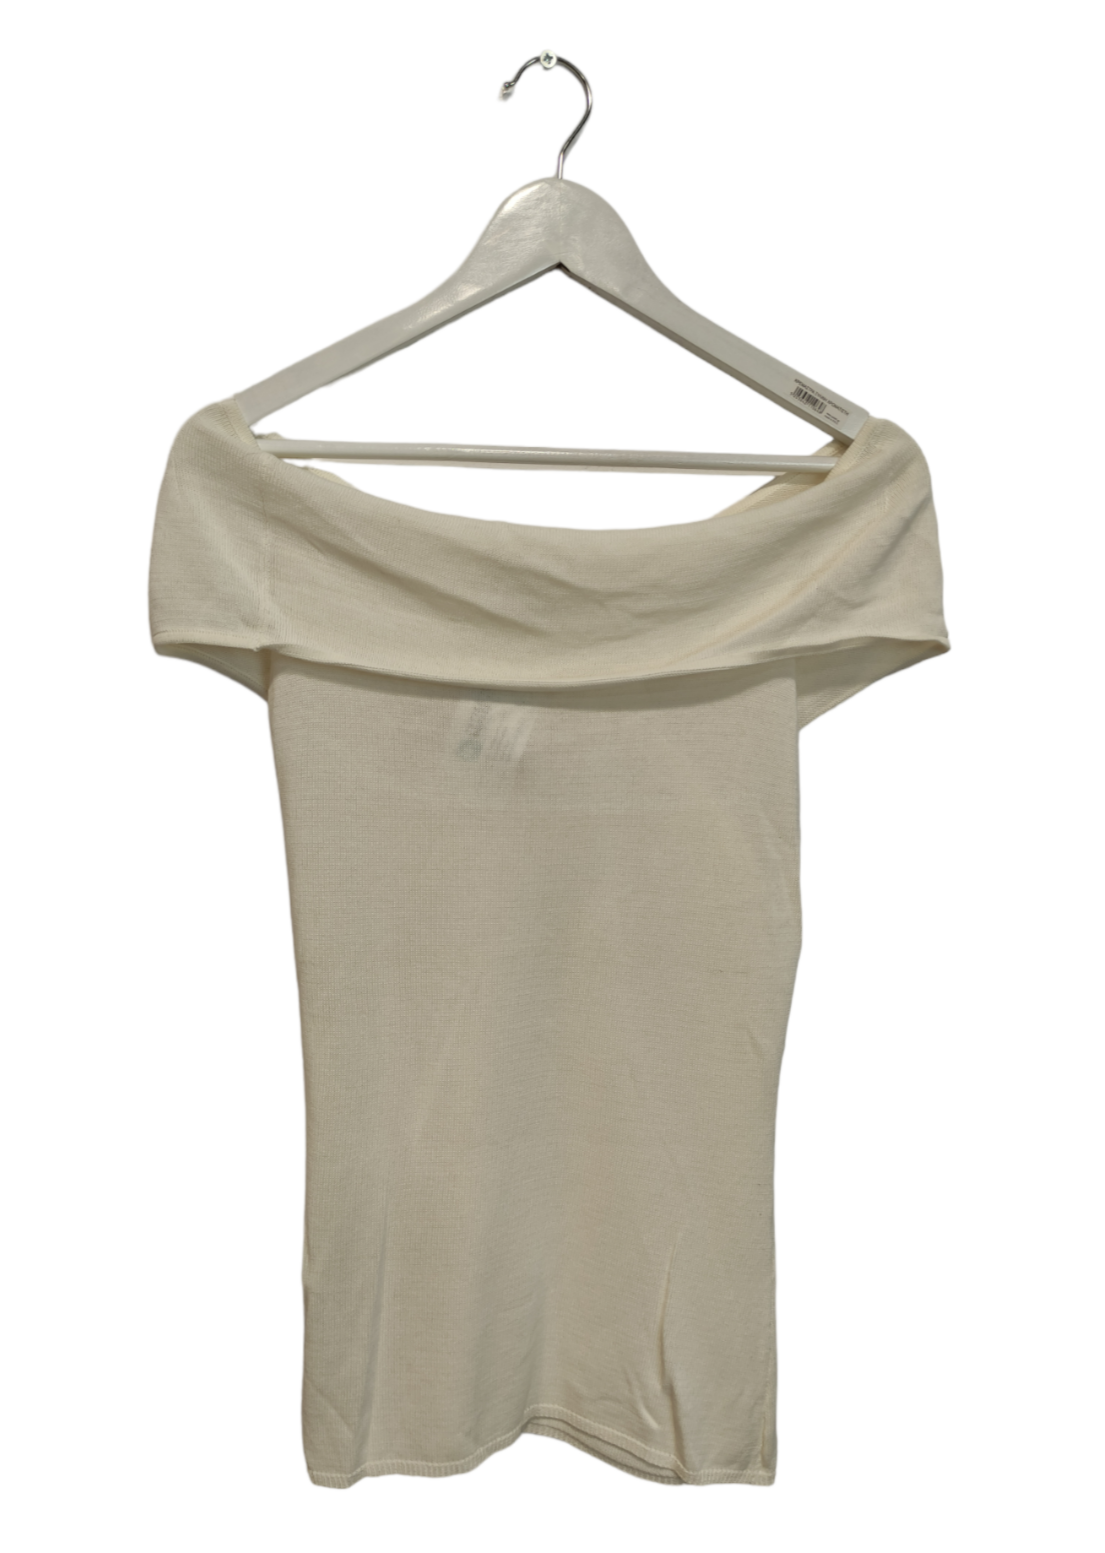 Γυναικεία Μπλούζα HARRYWHO σε Λευκό Χρώμα (Small)